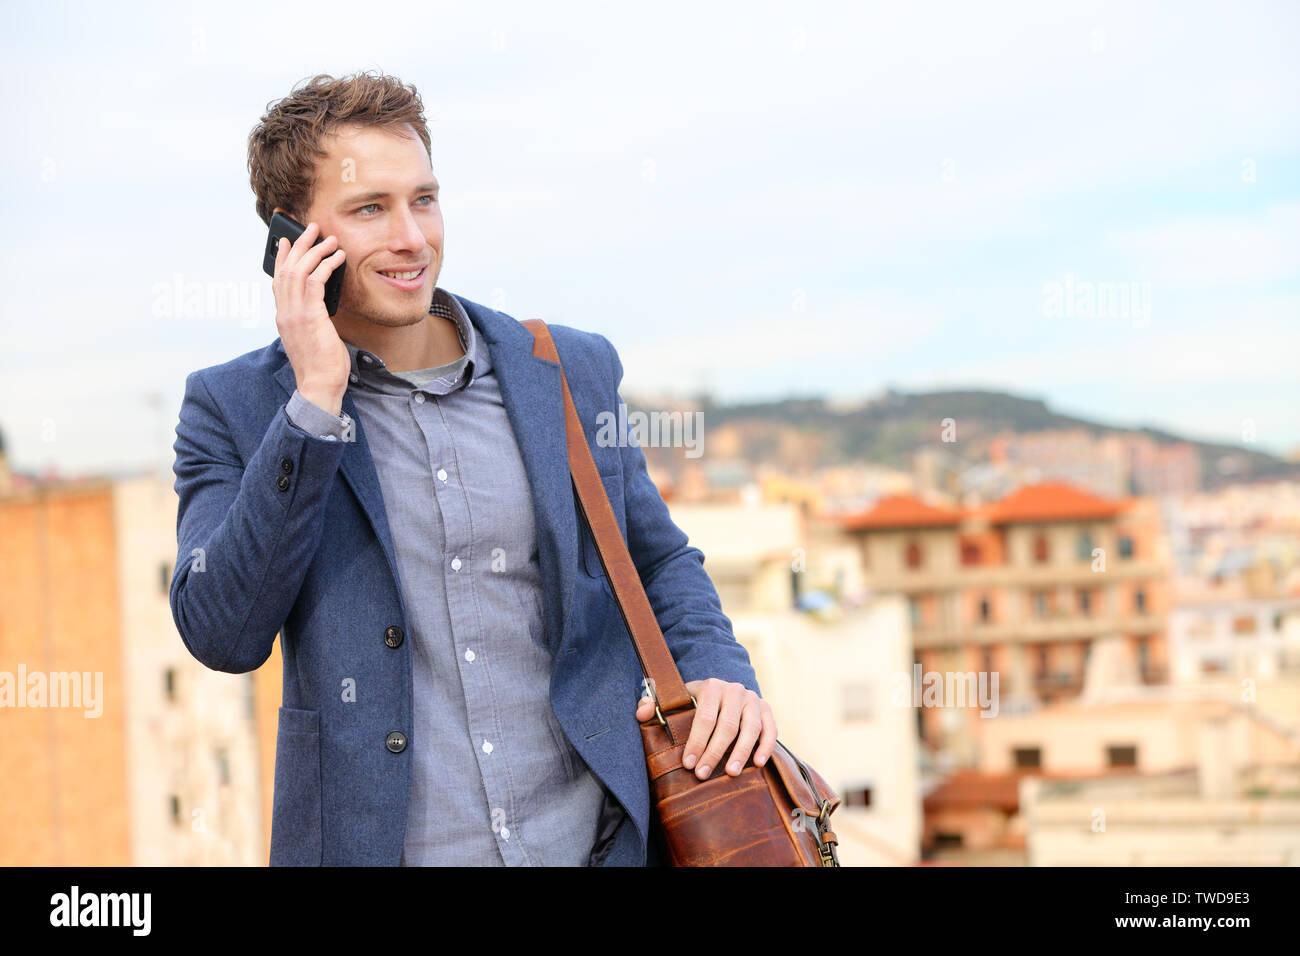 Mann auf dem Smartphone - Young Business Mann auf Smart Phone. Casual urban professional Geschäftsmann mit Mobiltelefon lächelt glücklich Wandern. Stattlicher Mann mit Anzug Jacke in Barcelona, Spanien Stockfoto